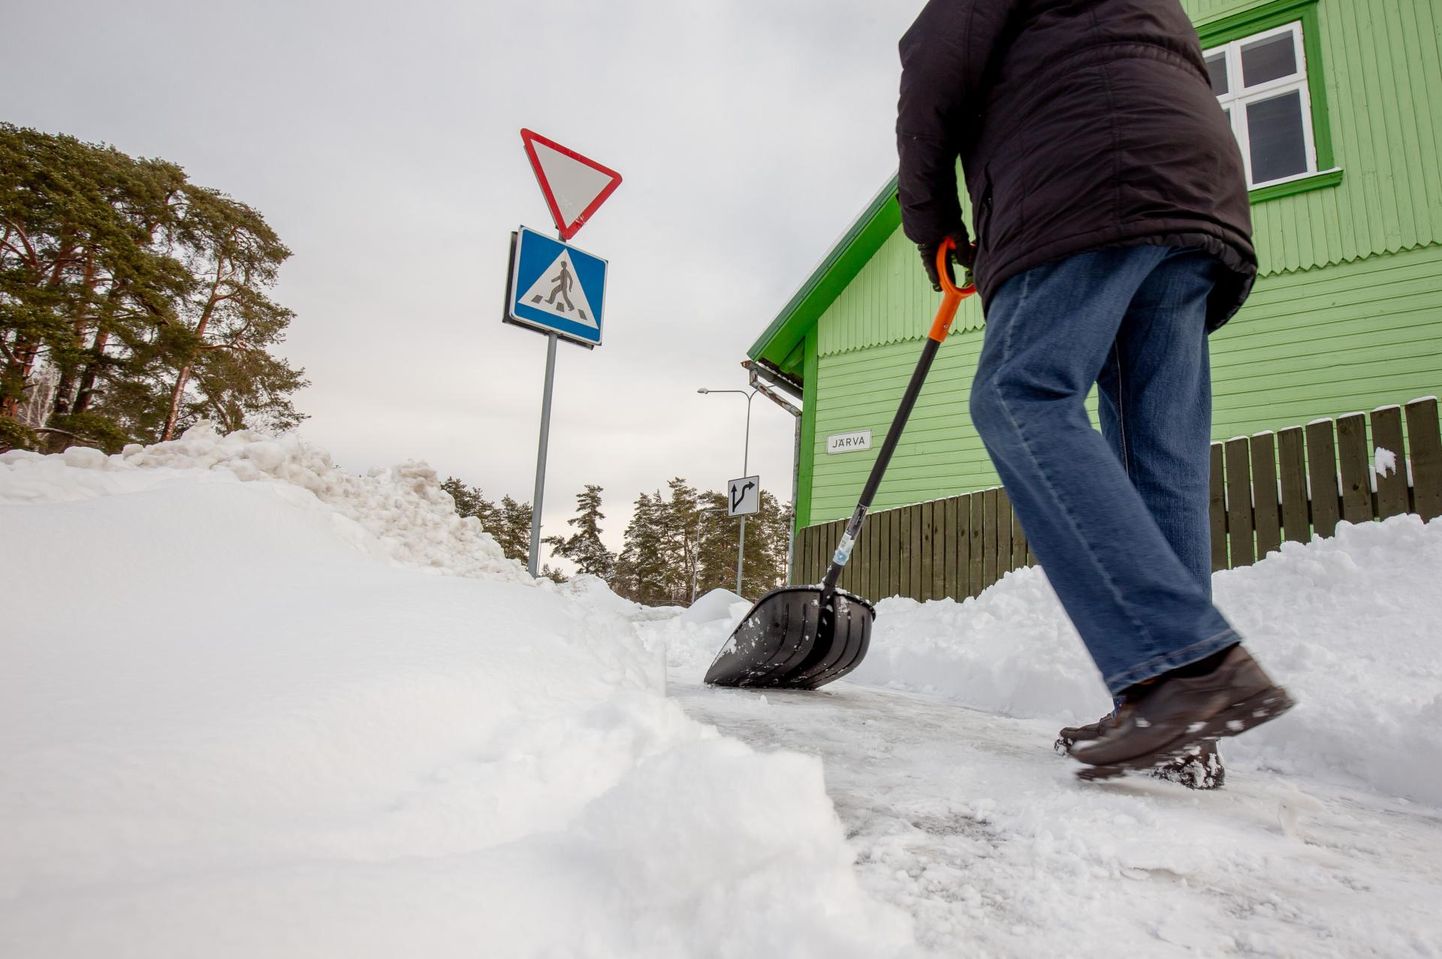 Erakinnistuäärsete kõnniteede puhastamine ja vajadusel libedustõrje on ehitusseadustiku järgi Pärnus kinnistuomanike kohustus. Foto on illustreeriv.